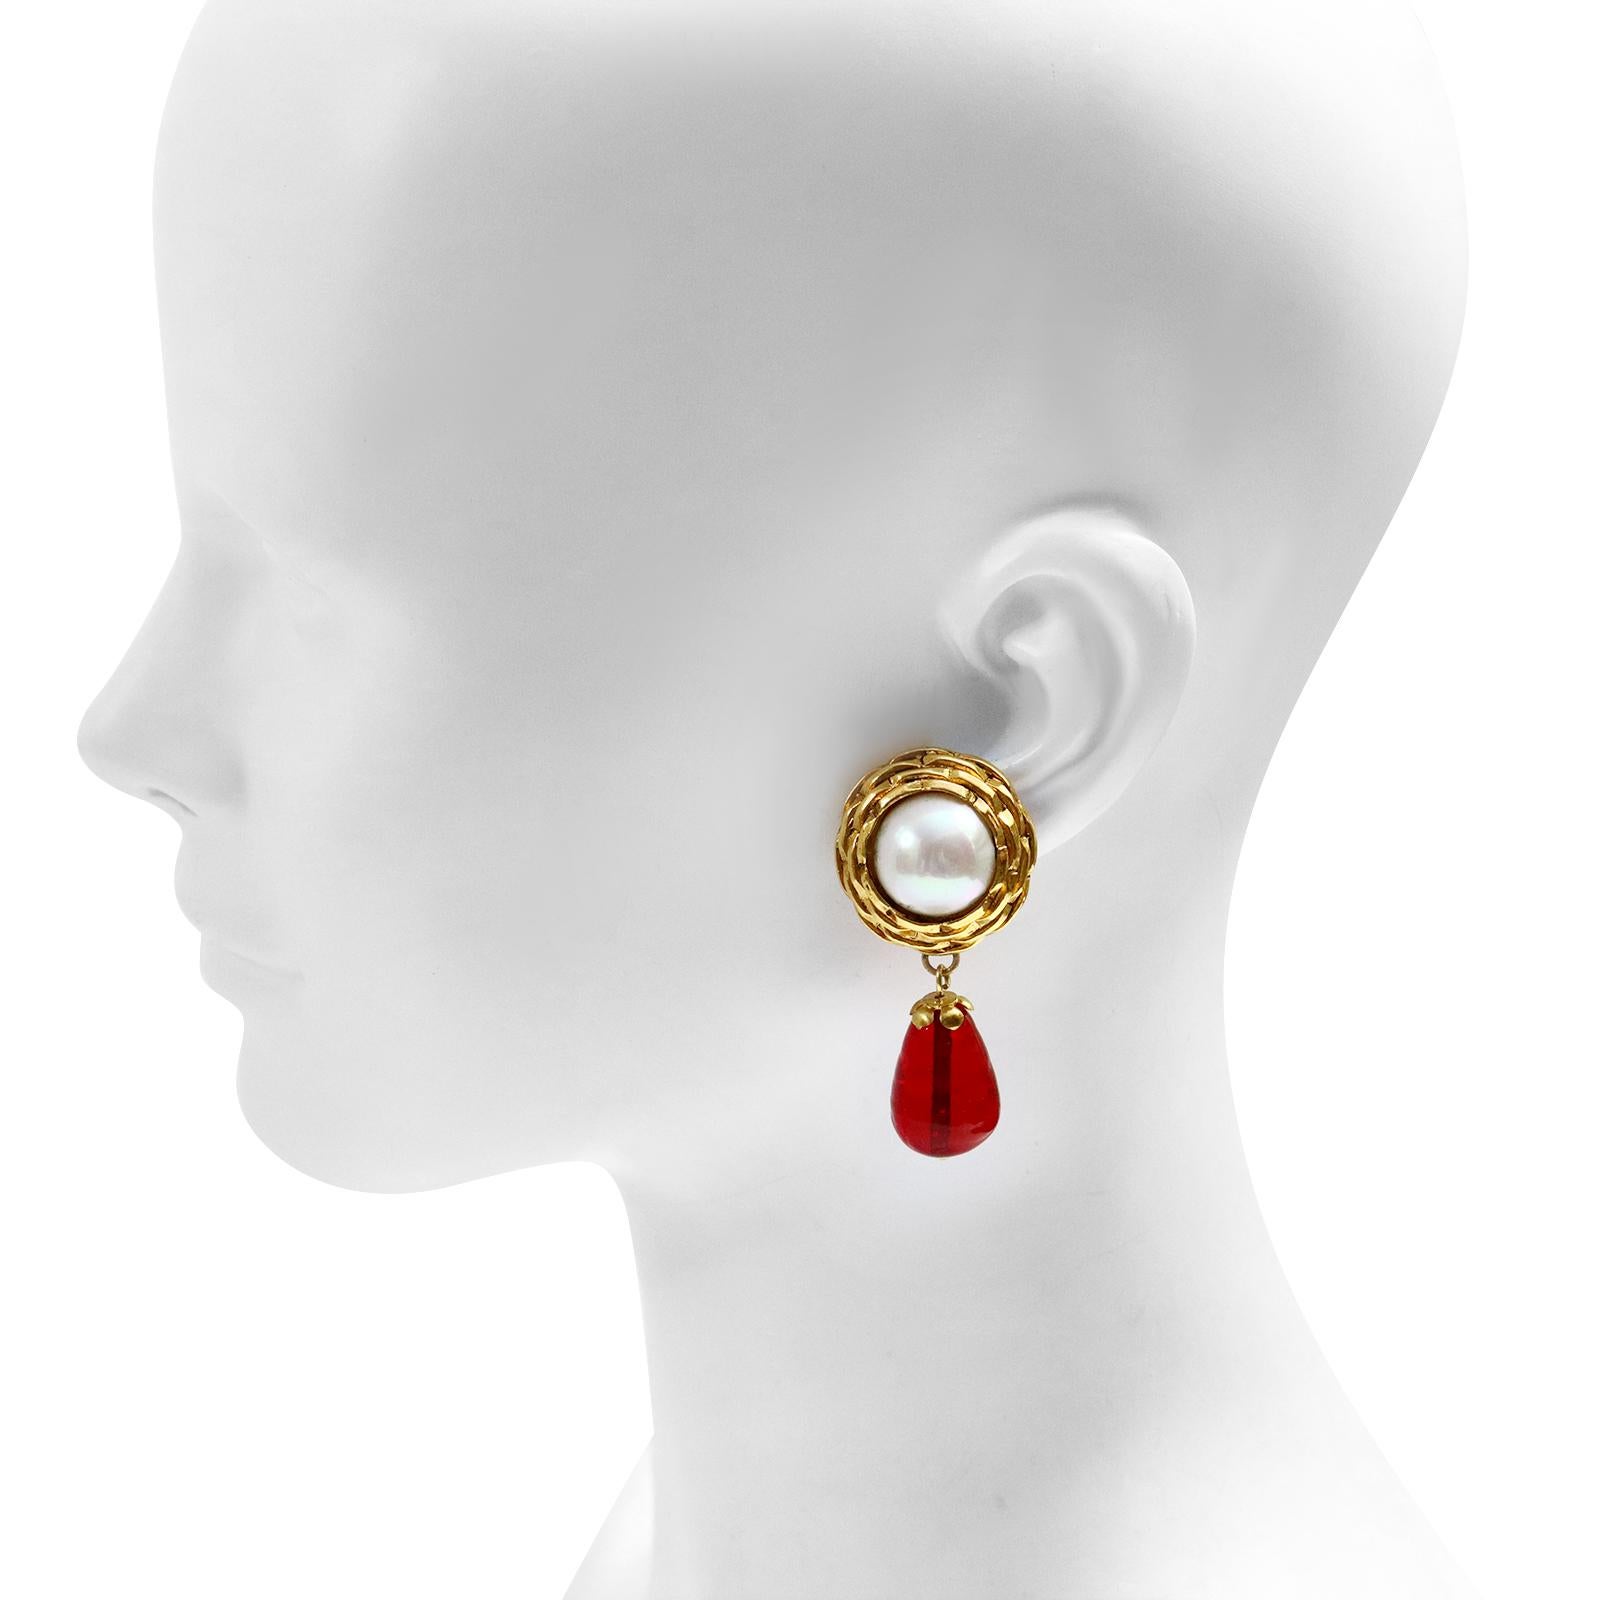 Maison Maison Gripoix Boucles d'oreilles pendantes en fausses perles et rouge. Enveloppée d'or tissé autour de la perle dans le style typique des années 1980 de Chanel. Clipsez-le. C'est tellement classique et vous avez toujours l'air bien, peu